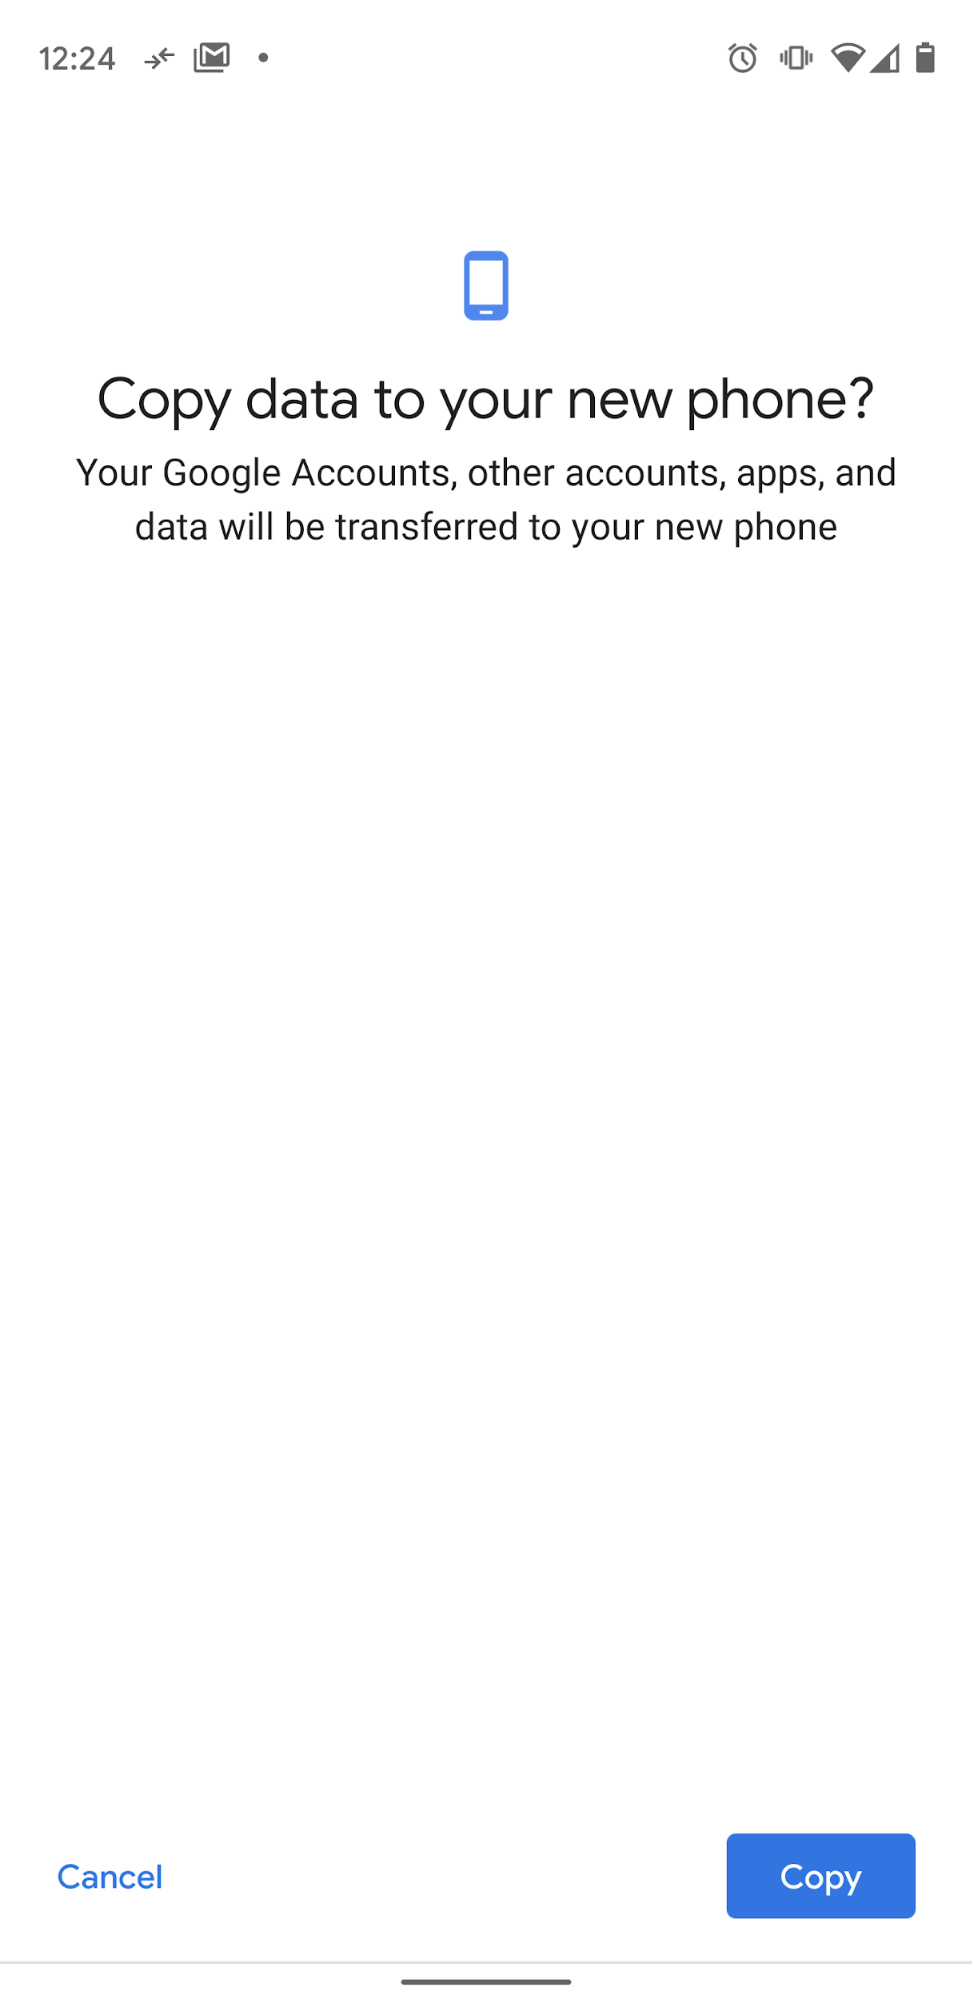 انسخ البيانات إلى هاتفك الجديد.